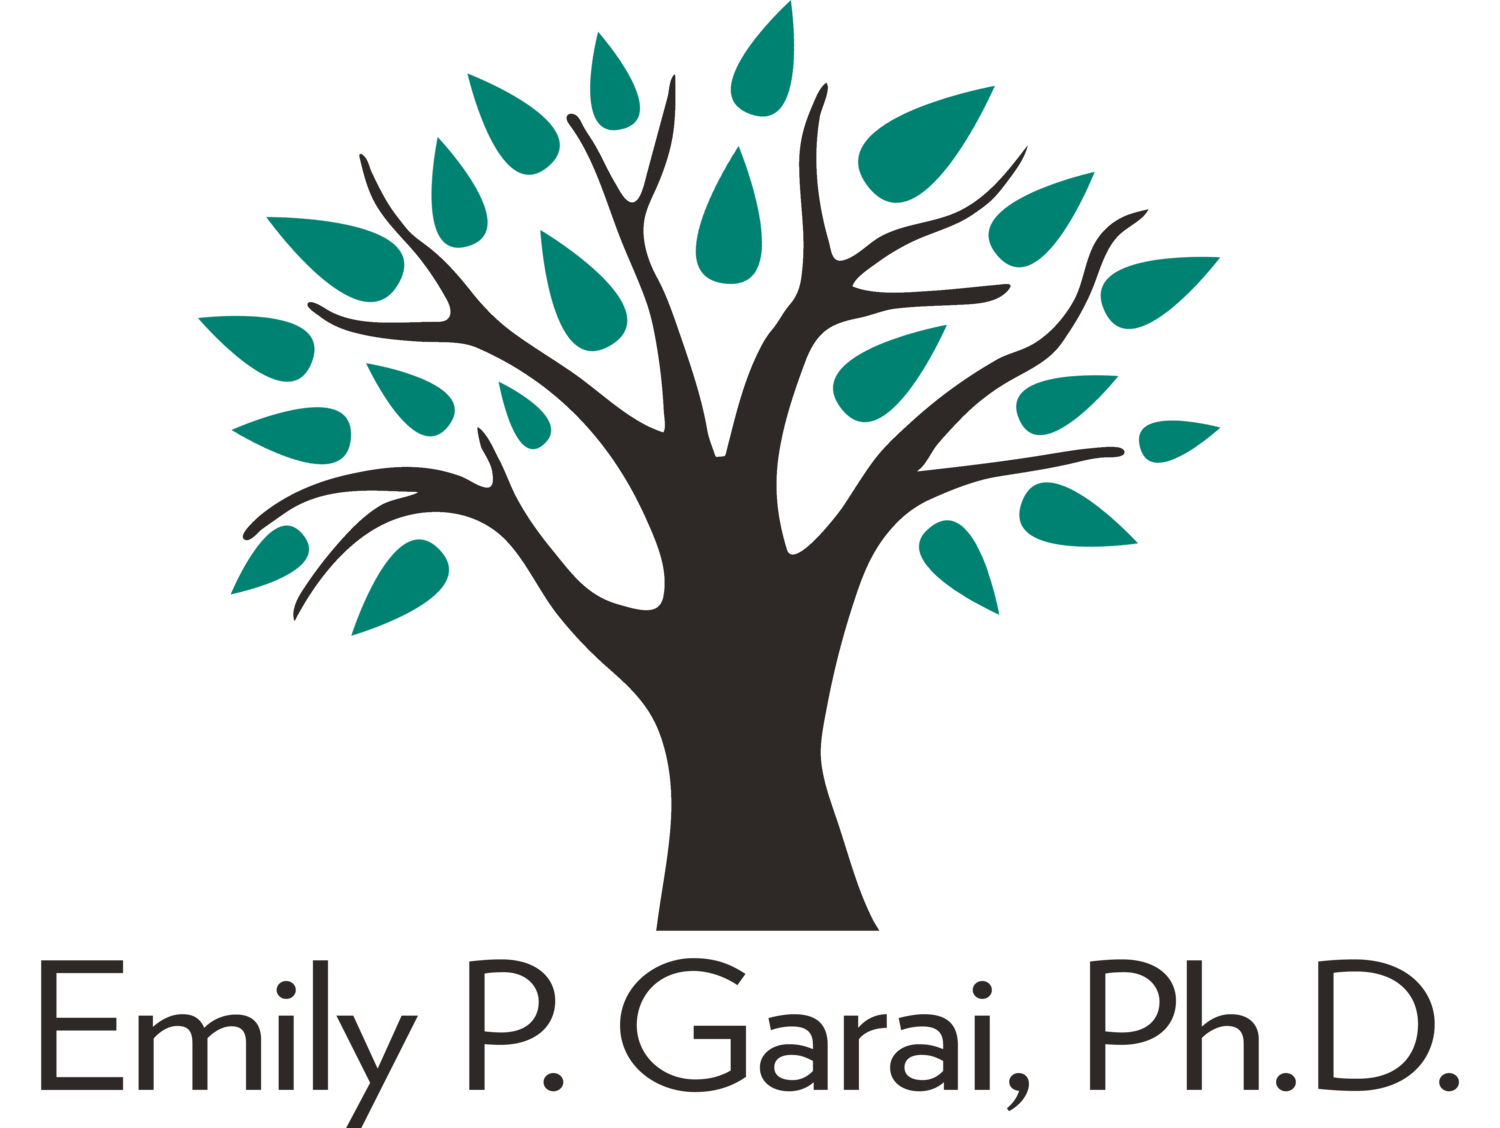 Emily P. Garai, Ph.D.